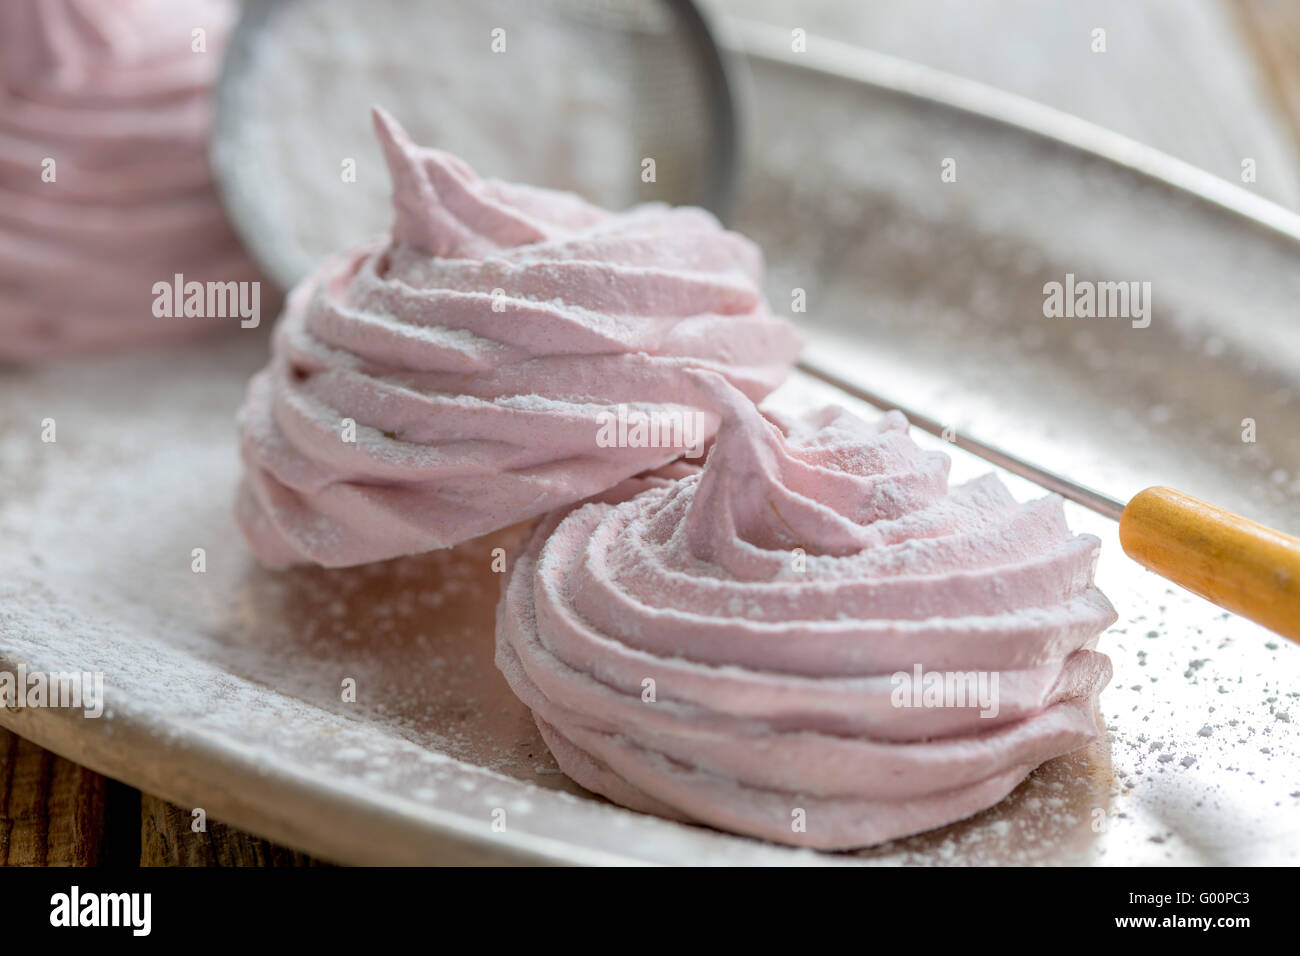 A basso contenuto calorico dessert fatti in casa - marshmallows. Foto Stock